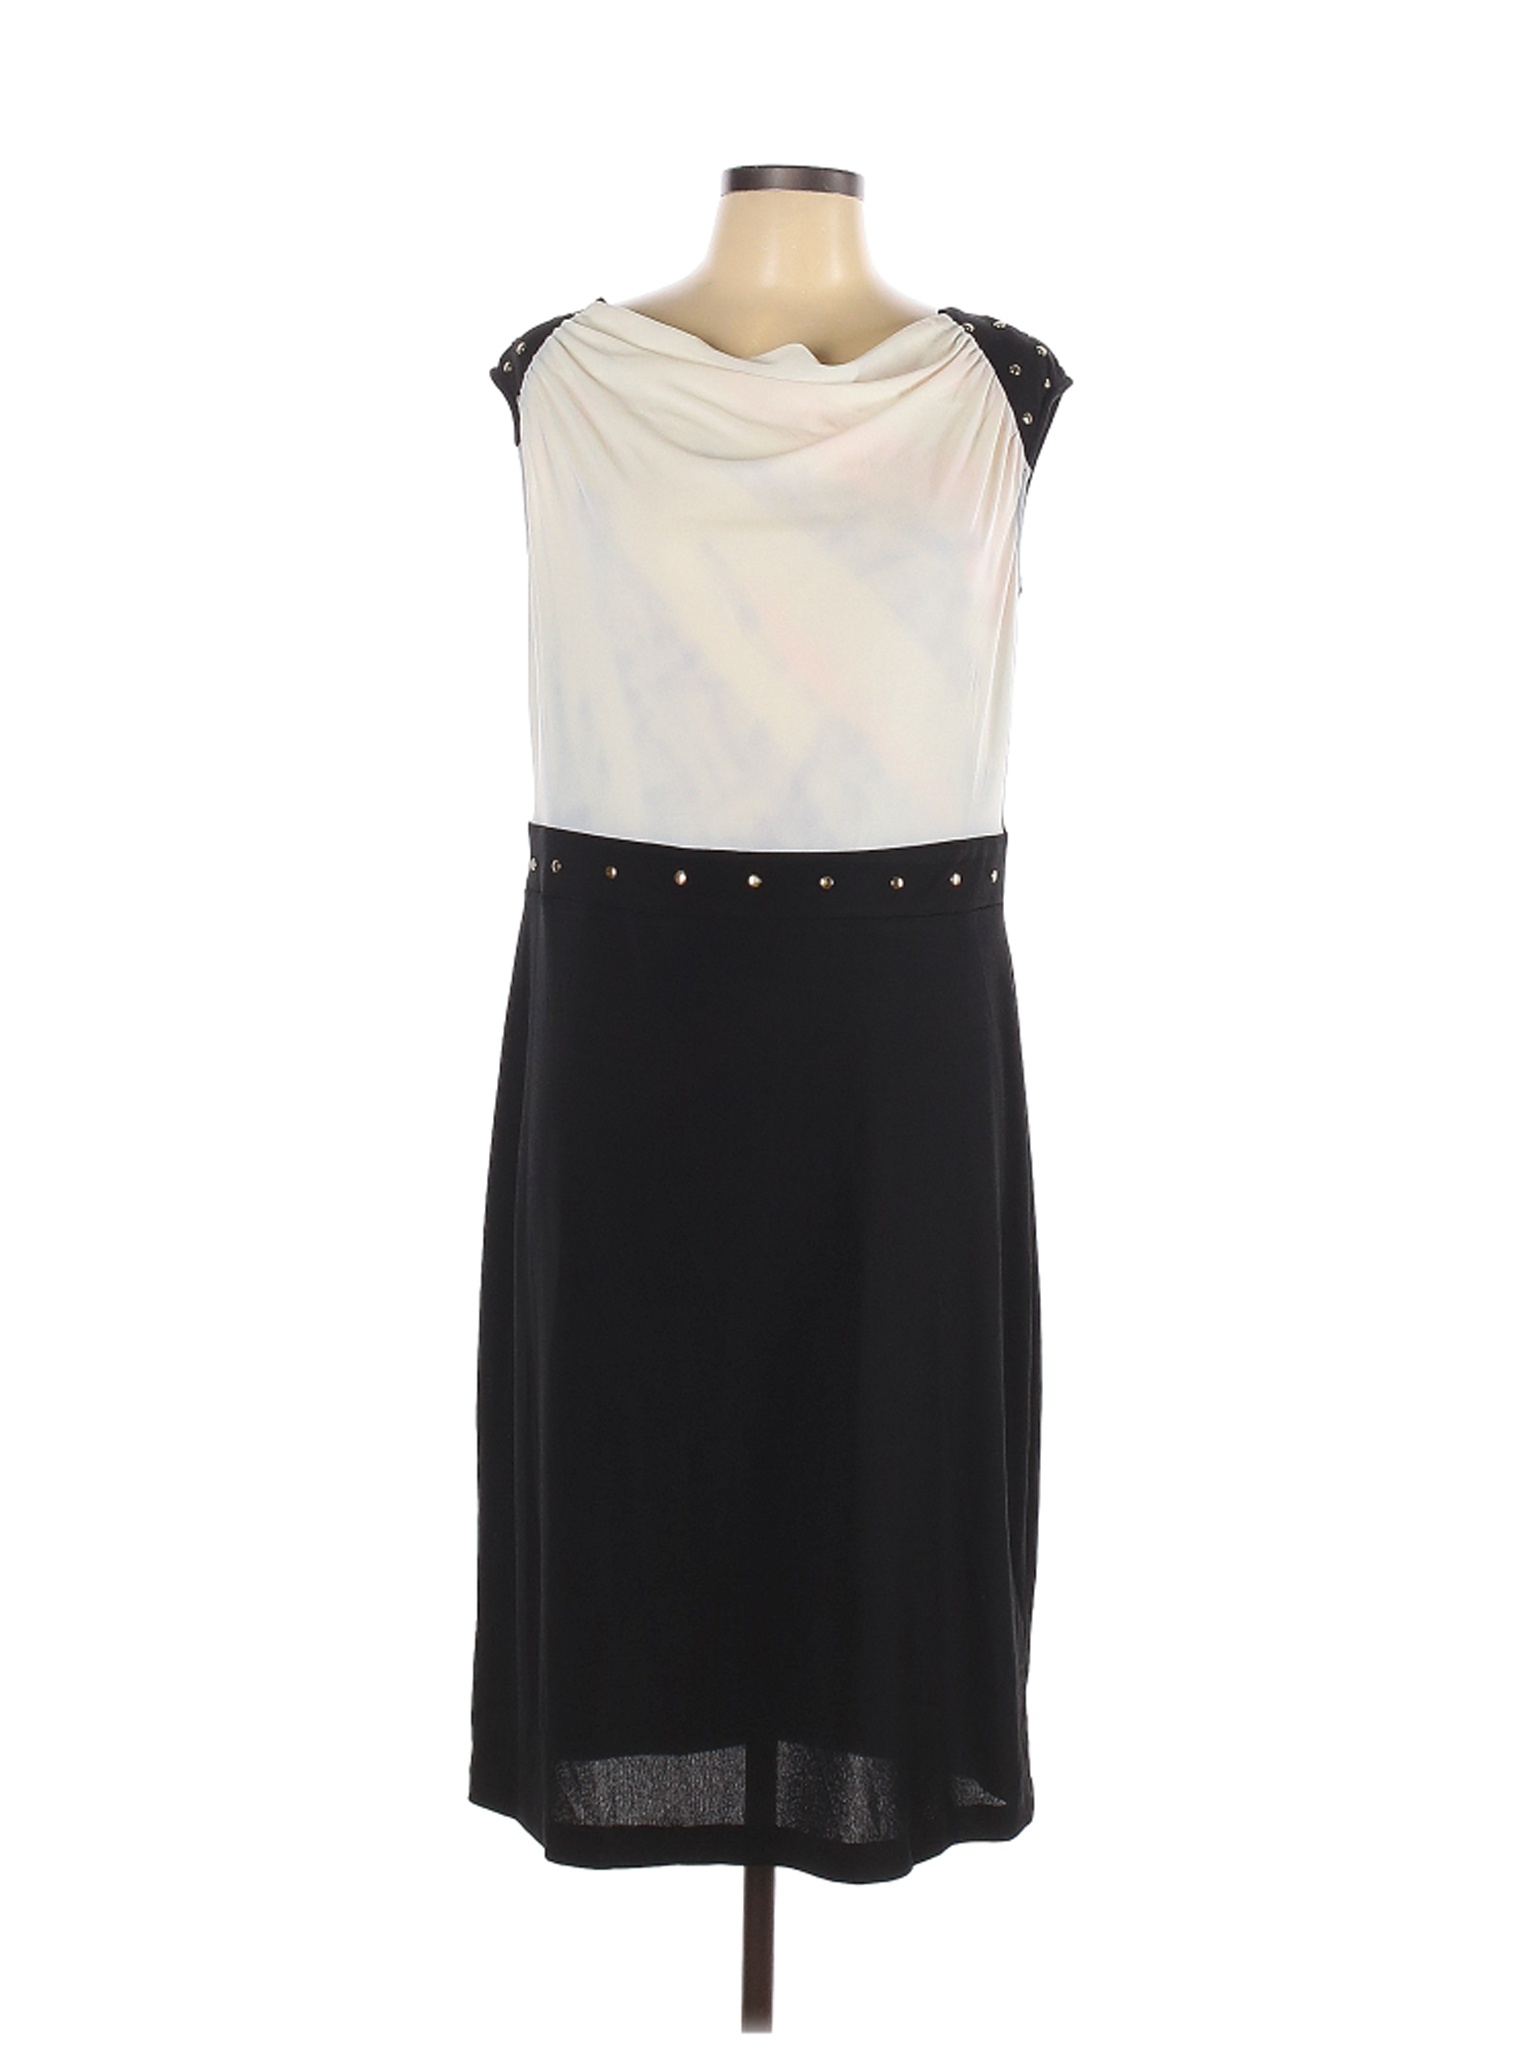 NWT Ashley Stewart Women Black Casual Dress 12 Plus | eBay